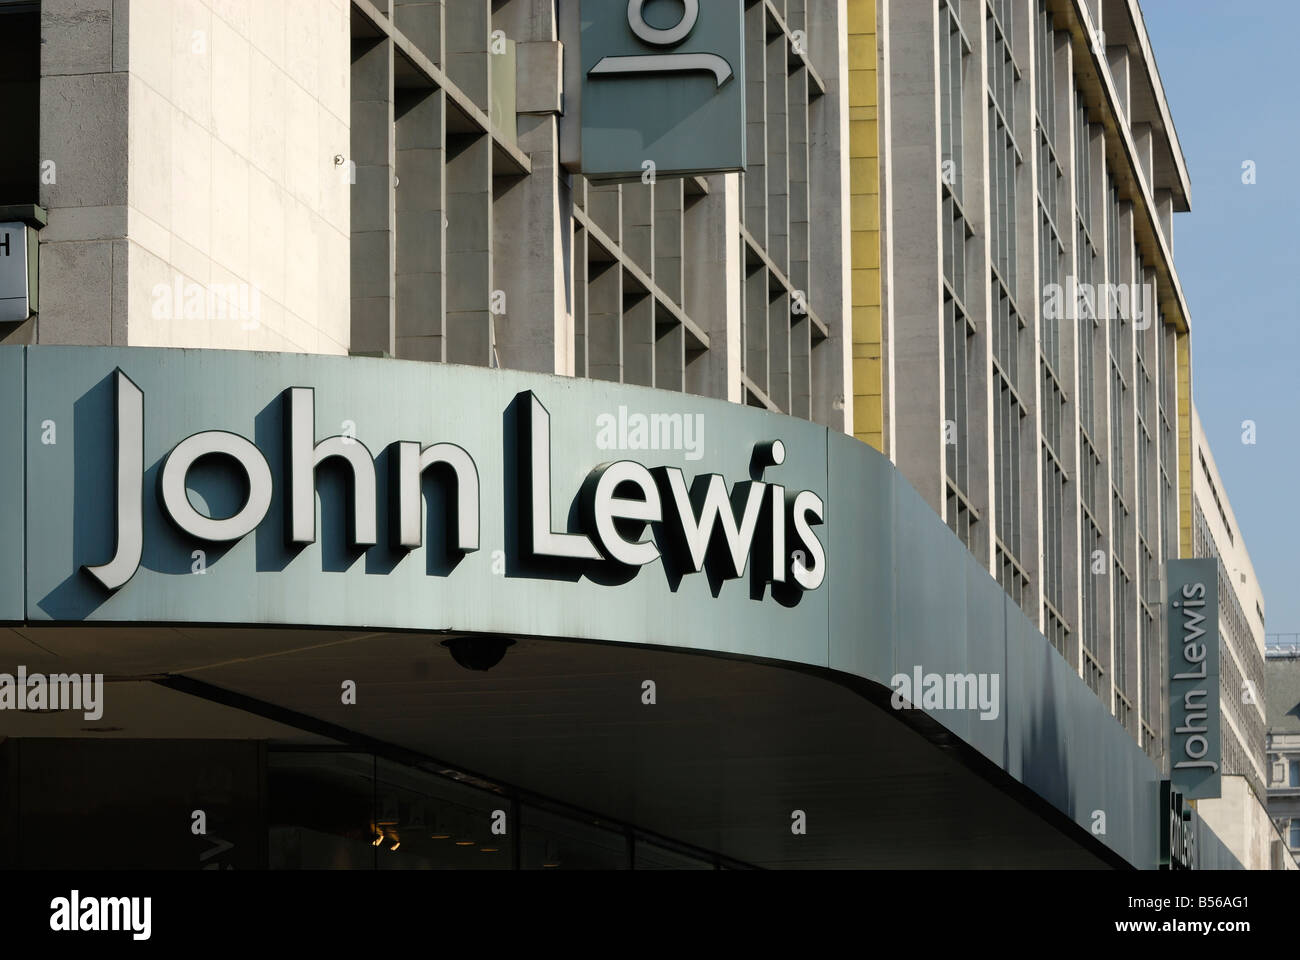 John Lewis department store, Oxford Street Stock Photo